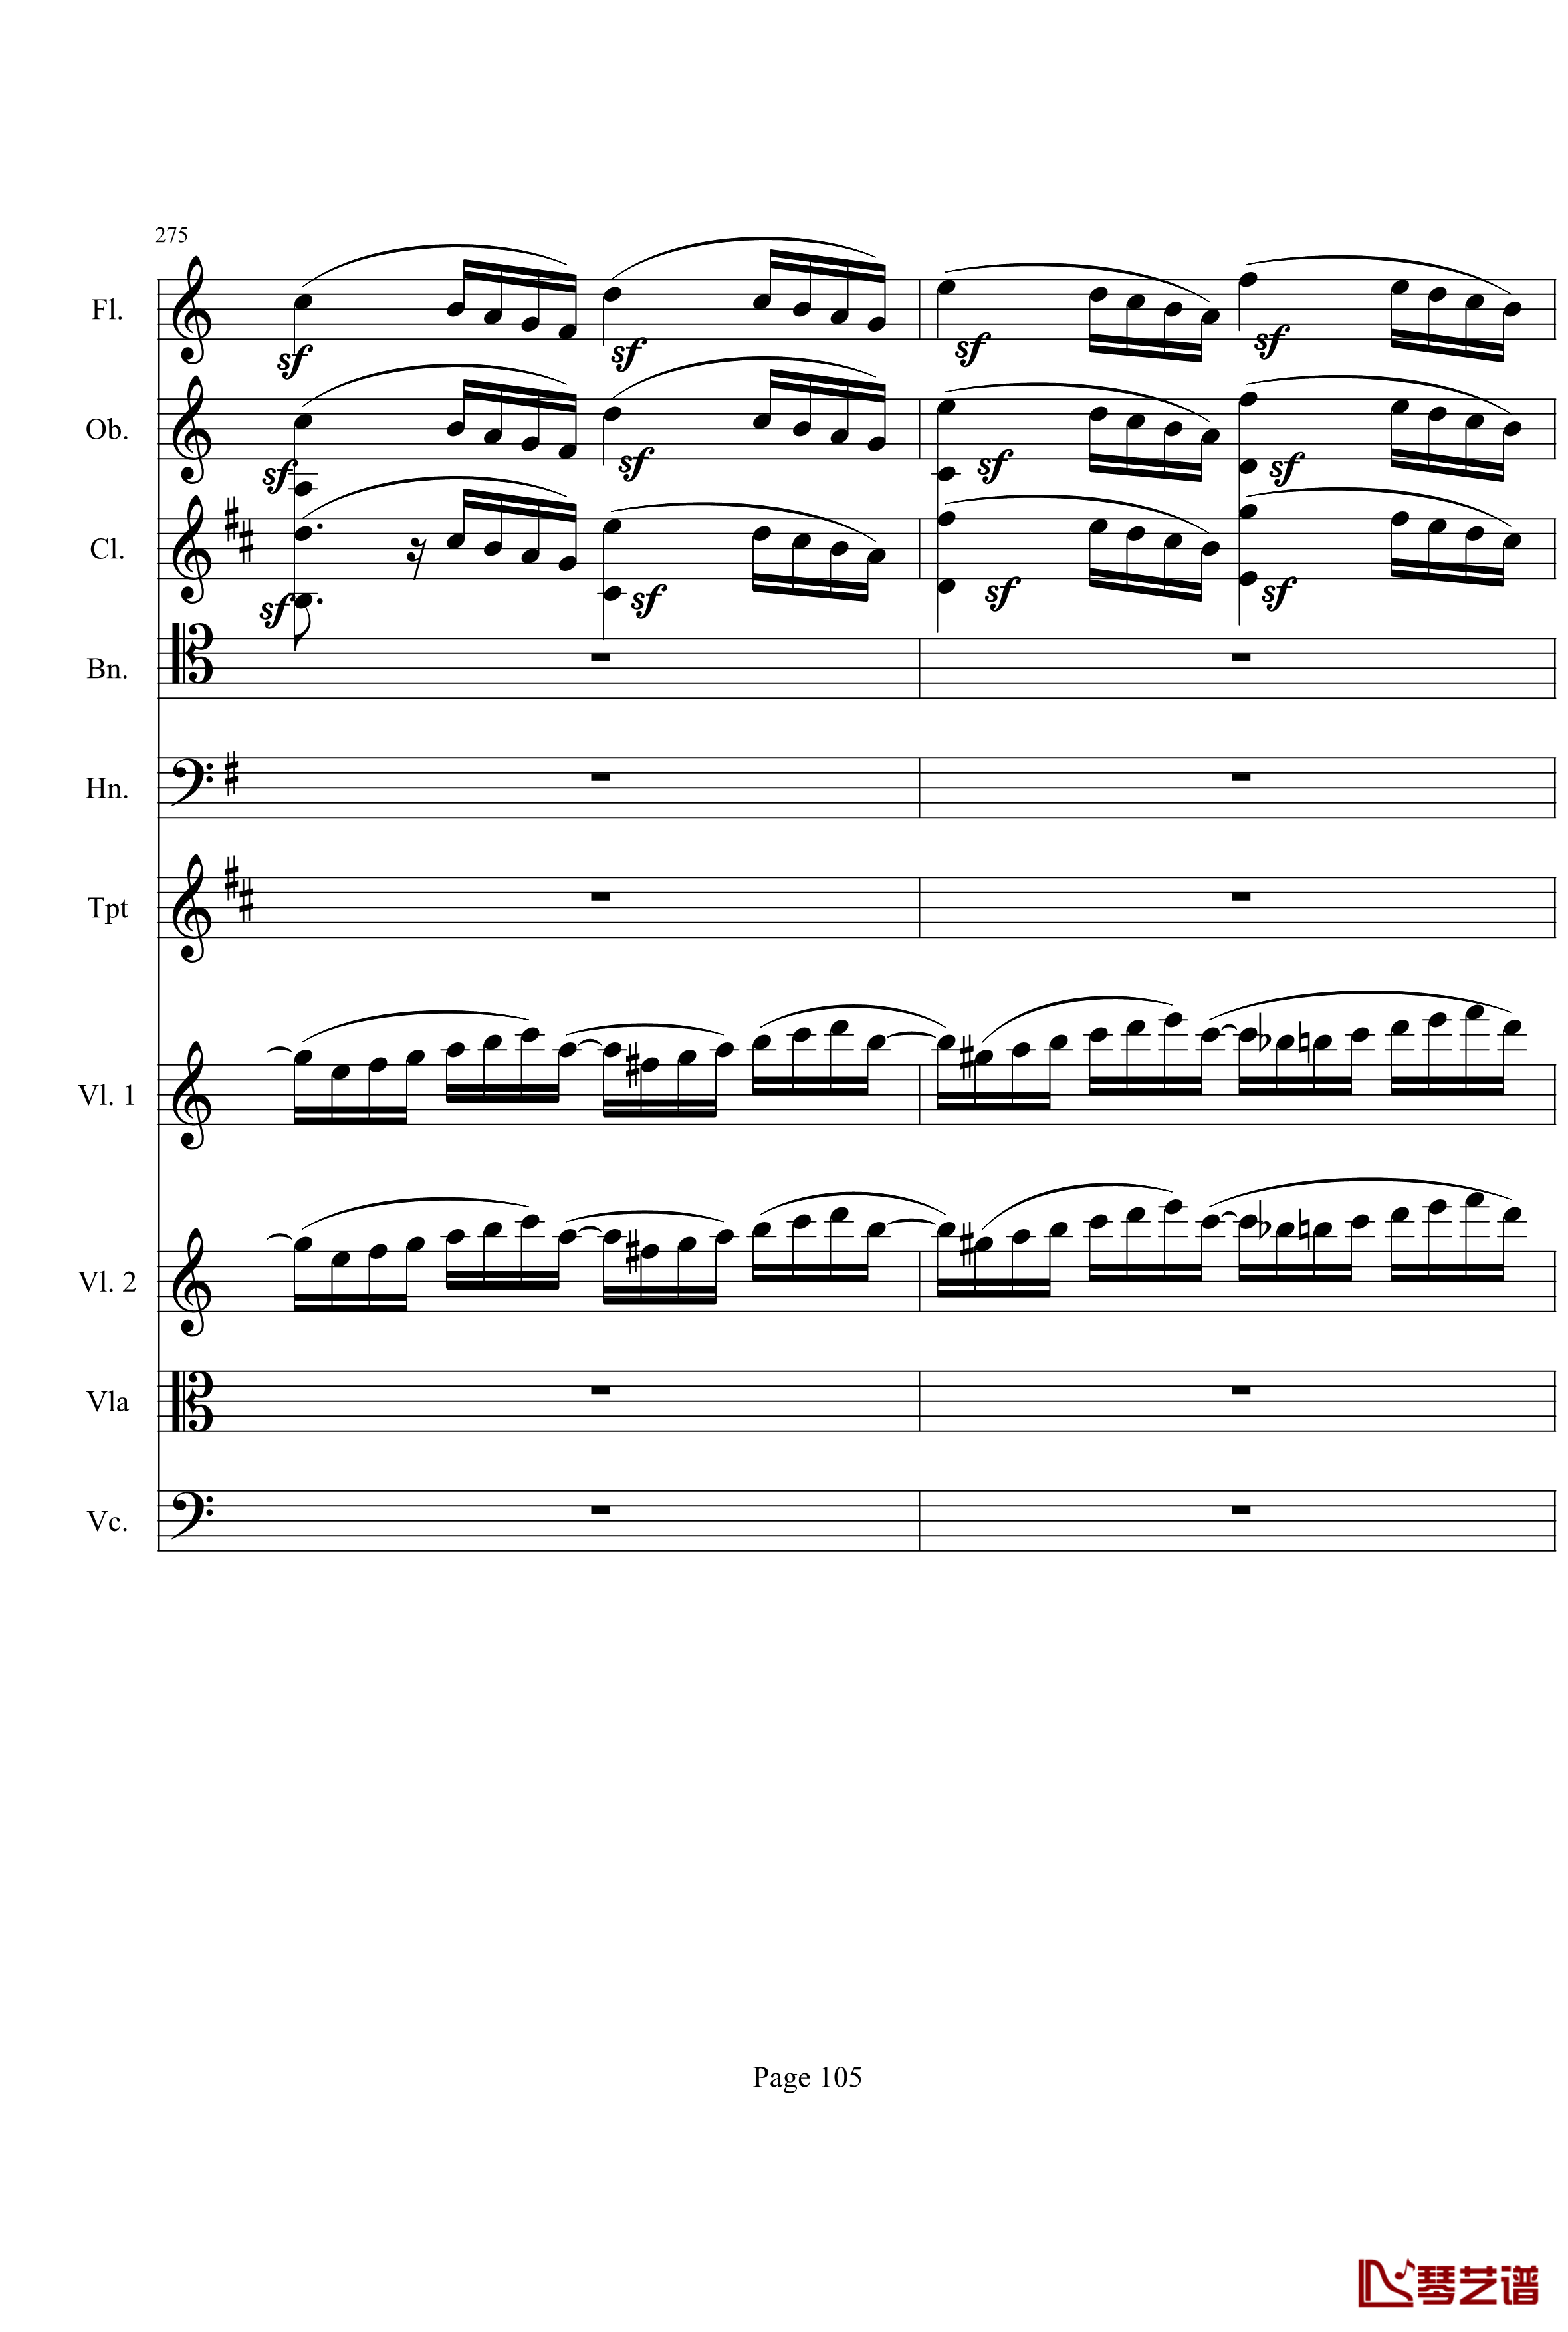 奏鸣曲之交响钢琴谱-第21-Ⅰ-贝多芬-beethoven105